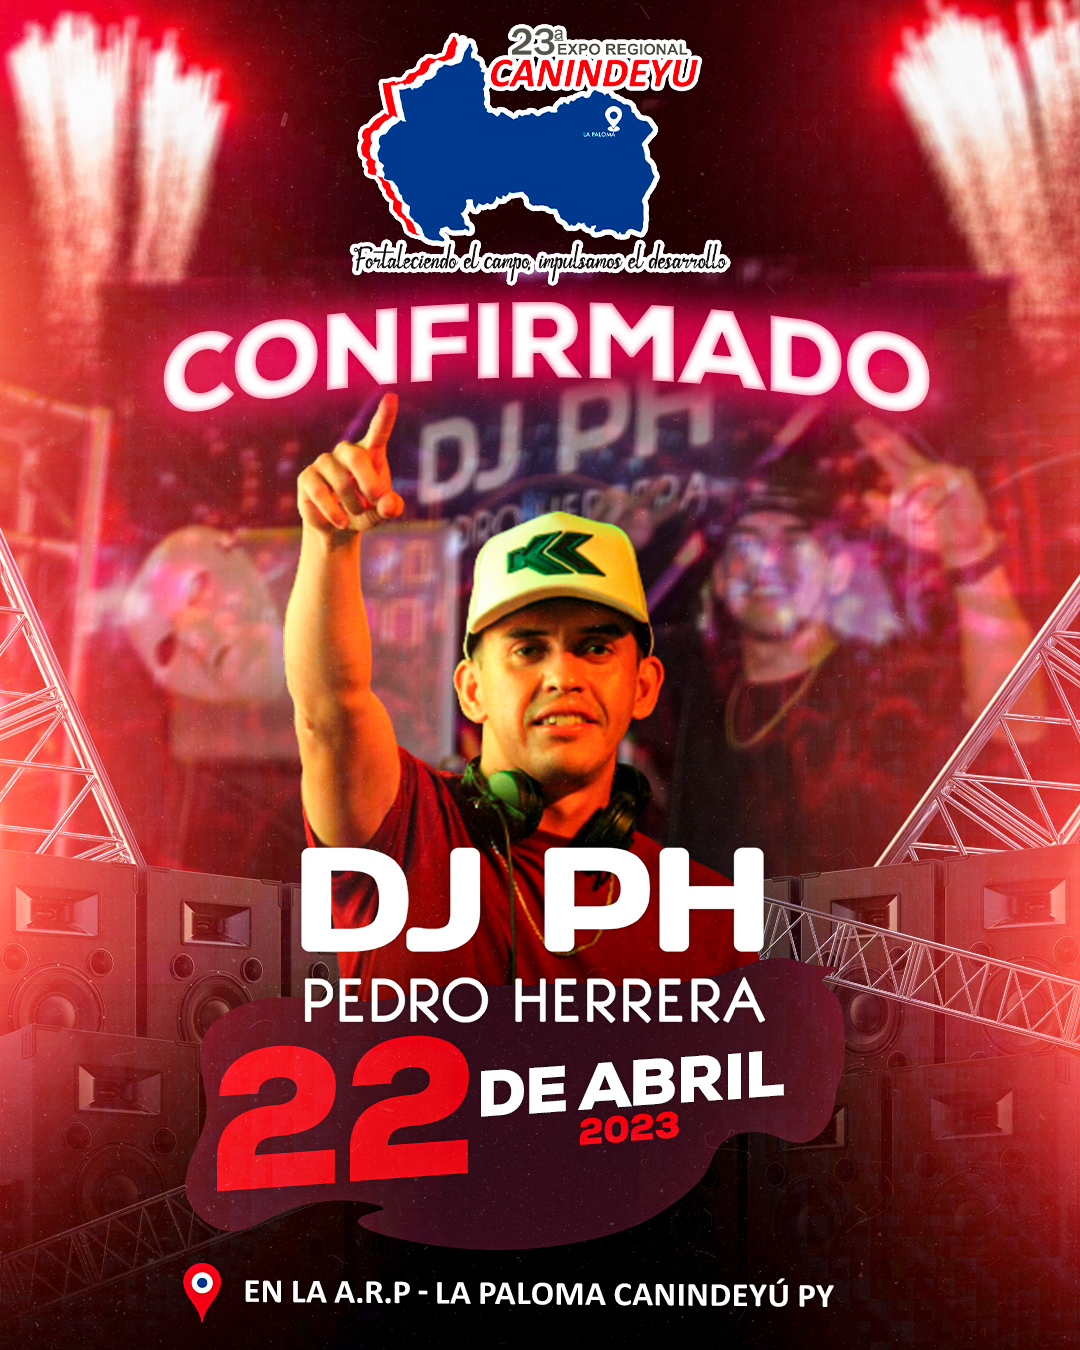 DJ-PH